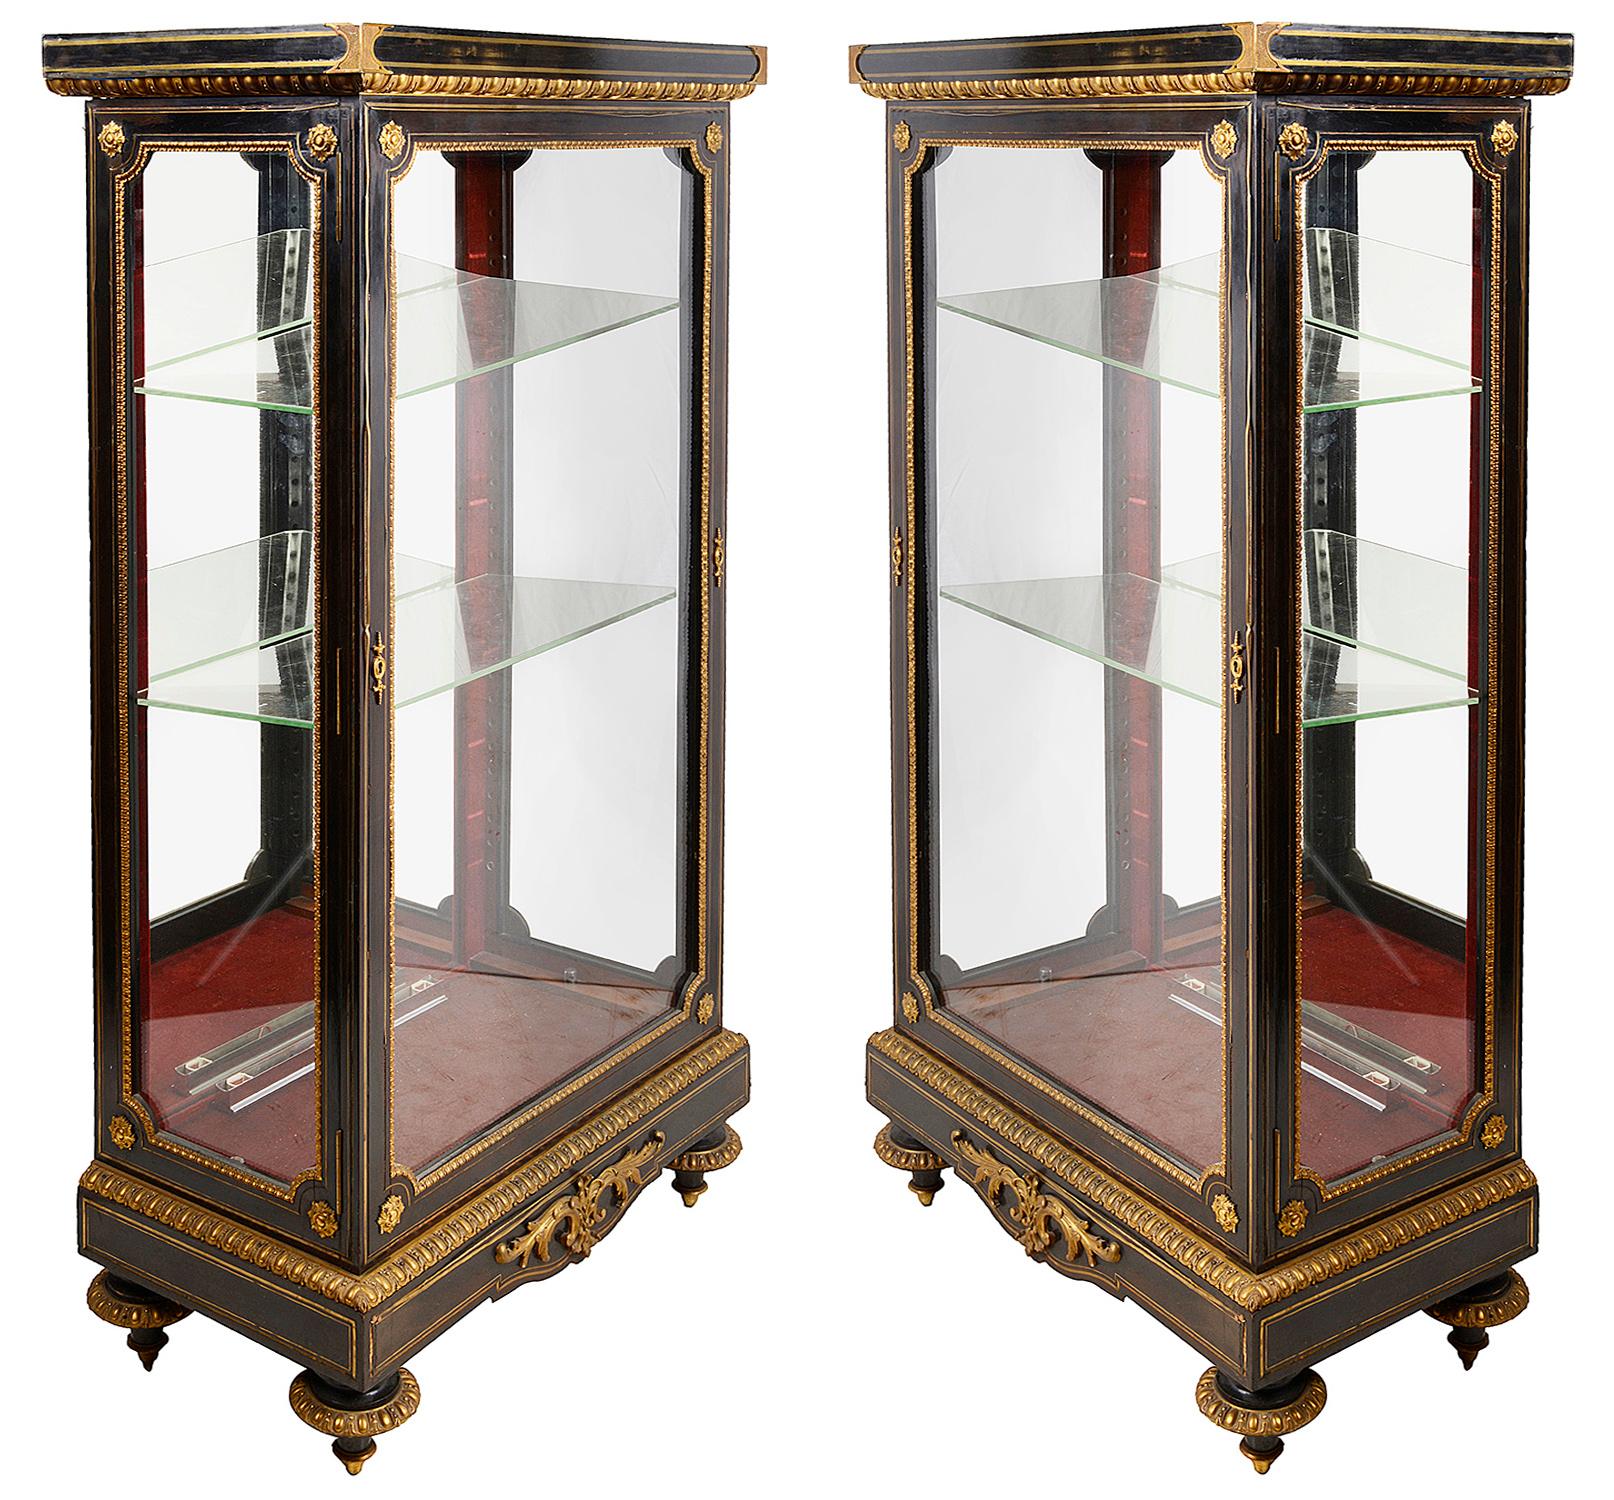 Une paire de vitrines de bonne qualité du 19ème siècle en ébénisterie française, avec des montures classiques en bronze doré. Les étagères en verre ajustables et les dos en miroir à l'intérieur, élevés sur des bases de plinthe et des pieds tournés